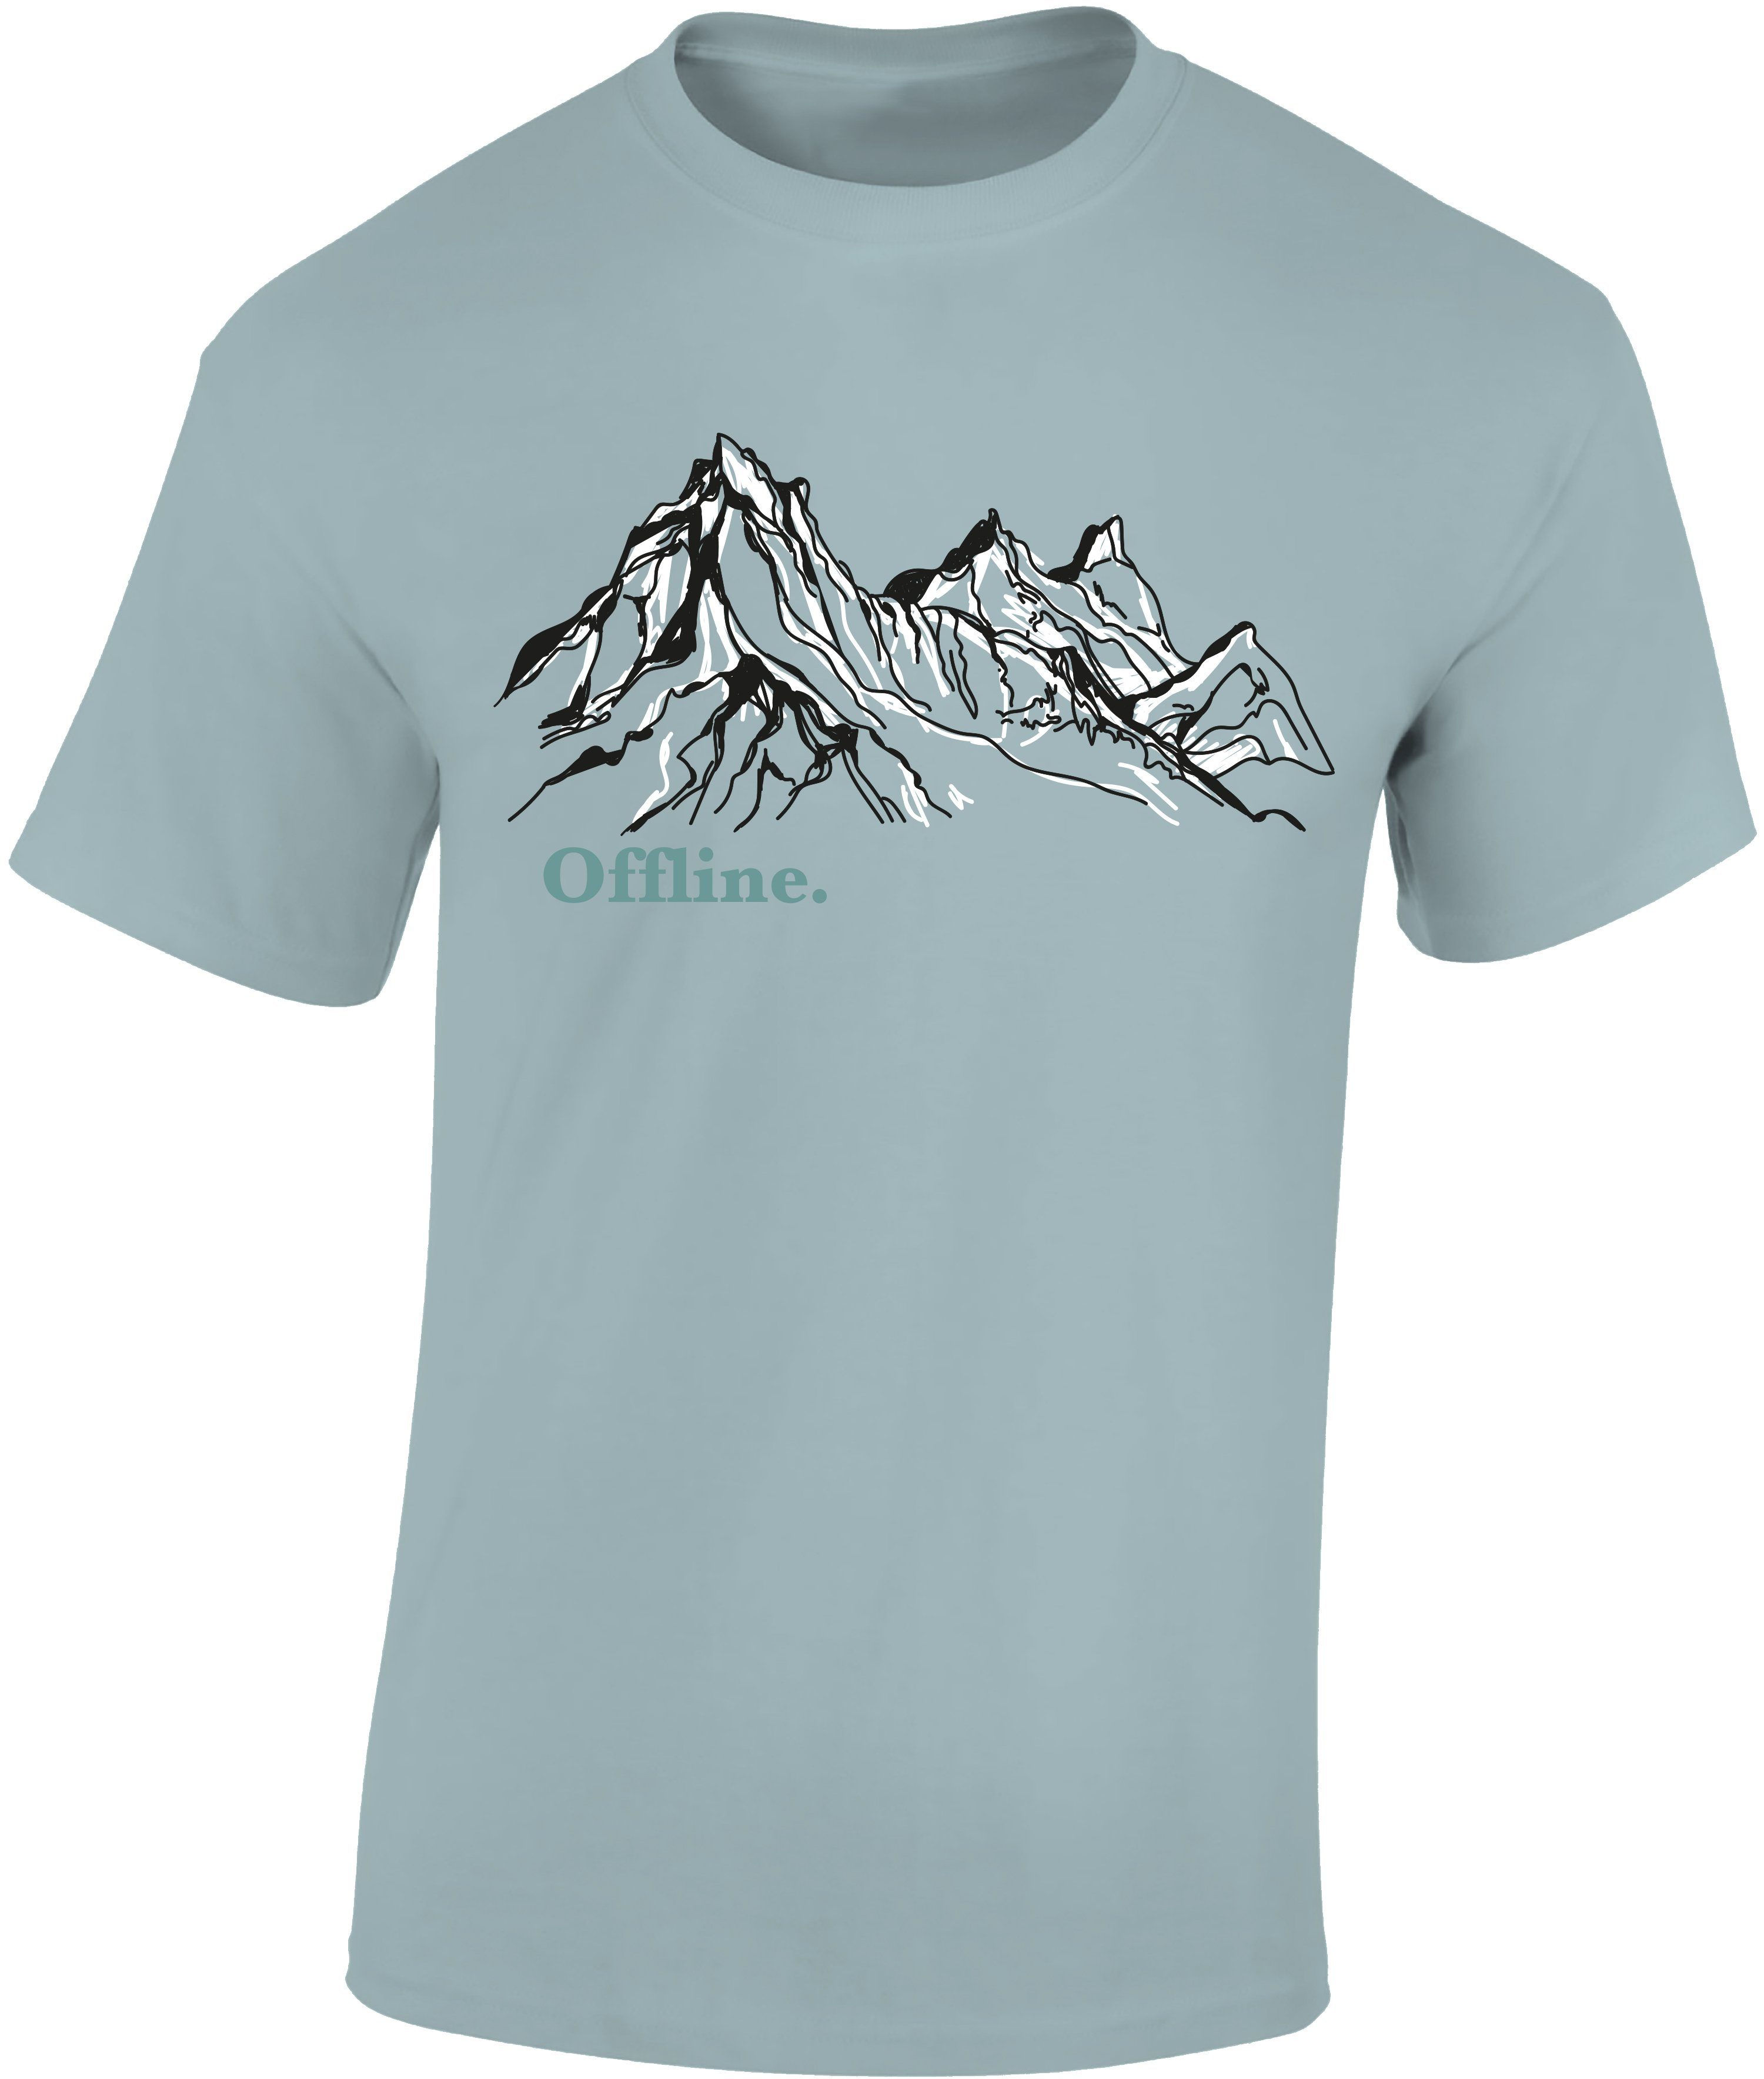 Baddery Print-Shirt Wander Tshirt : Offline - Kletter T-Shirt für Wanderfreunde, hochwertiger Siebdruck, aus Baumwolle